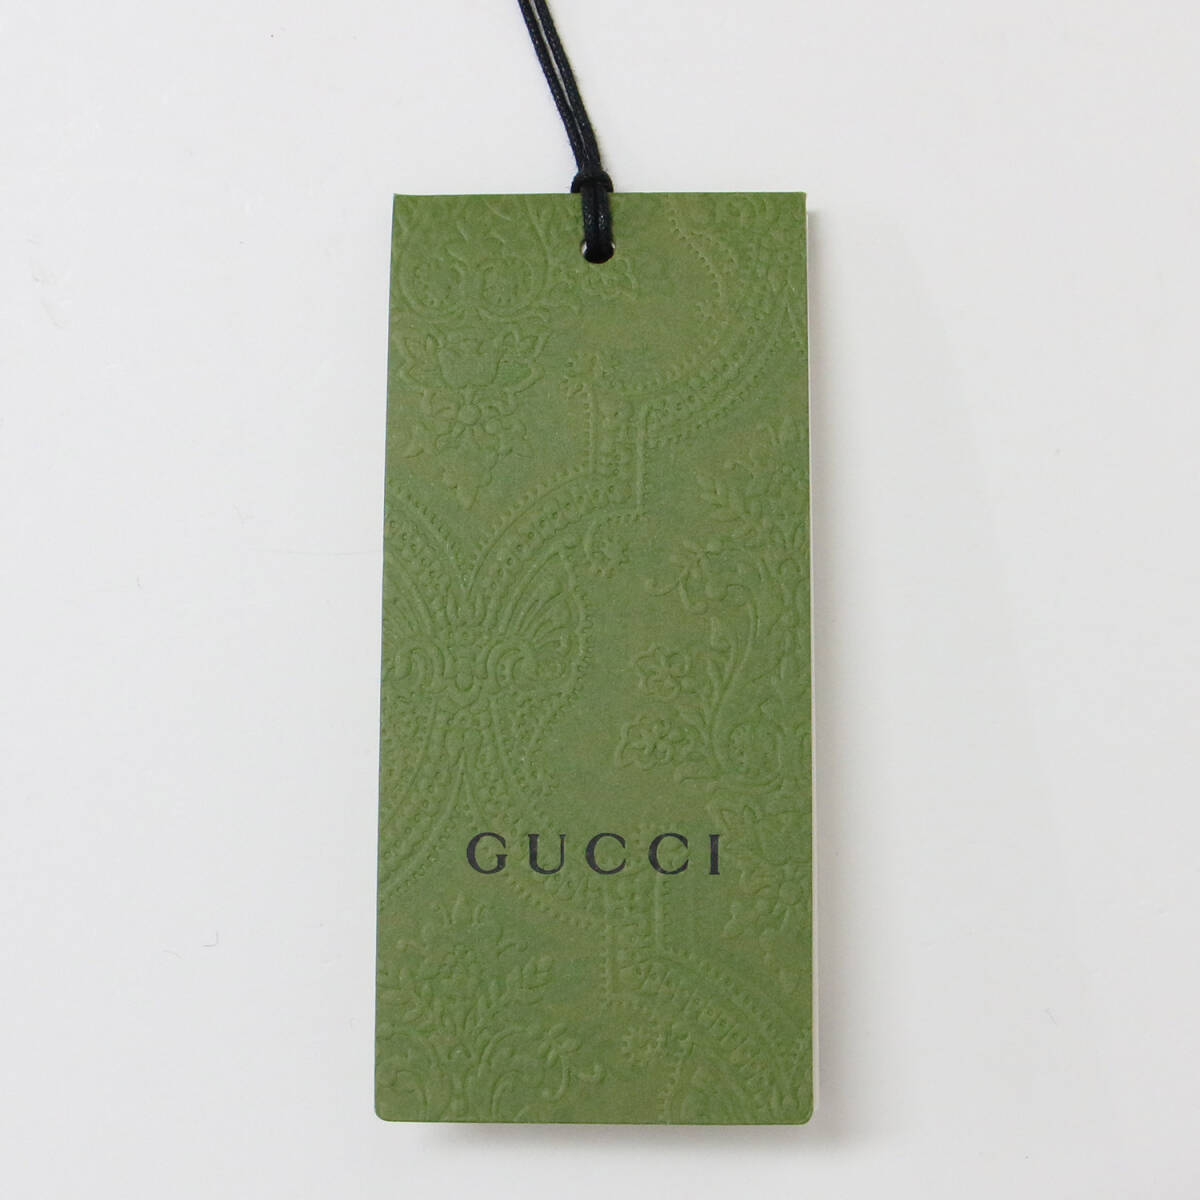  прекрасный товар GUCCI Gucci лучший безрукавка tops желтый бежевый зеленый 36(S) бахрома GG твид GG Logo хлопок хлопок модный 